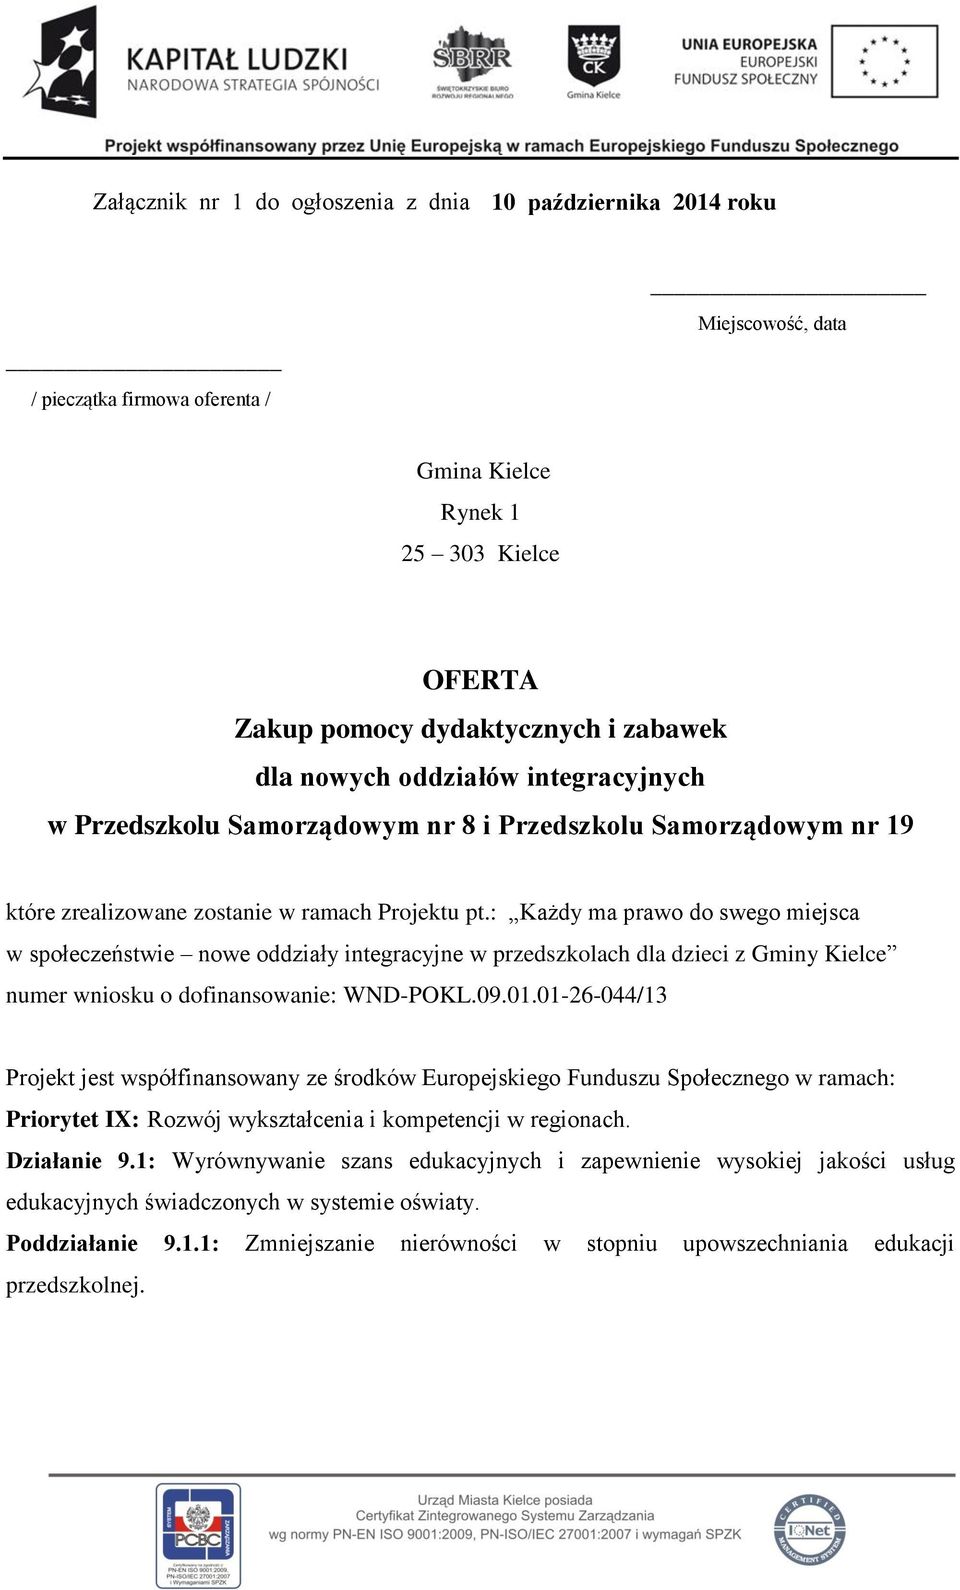 : Każdy ma prawo do swego miejsca w społeczeństwie nowe oddziały integracyjne w przedszkolach dla dzieci z Gminy Kielce numer wniosku o dofinansowanie: WND-POKL.09.01.